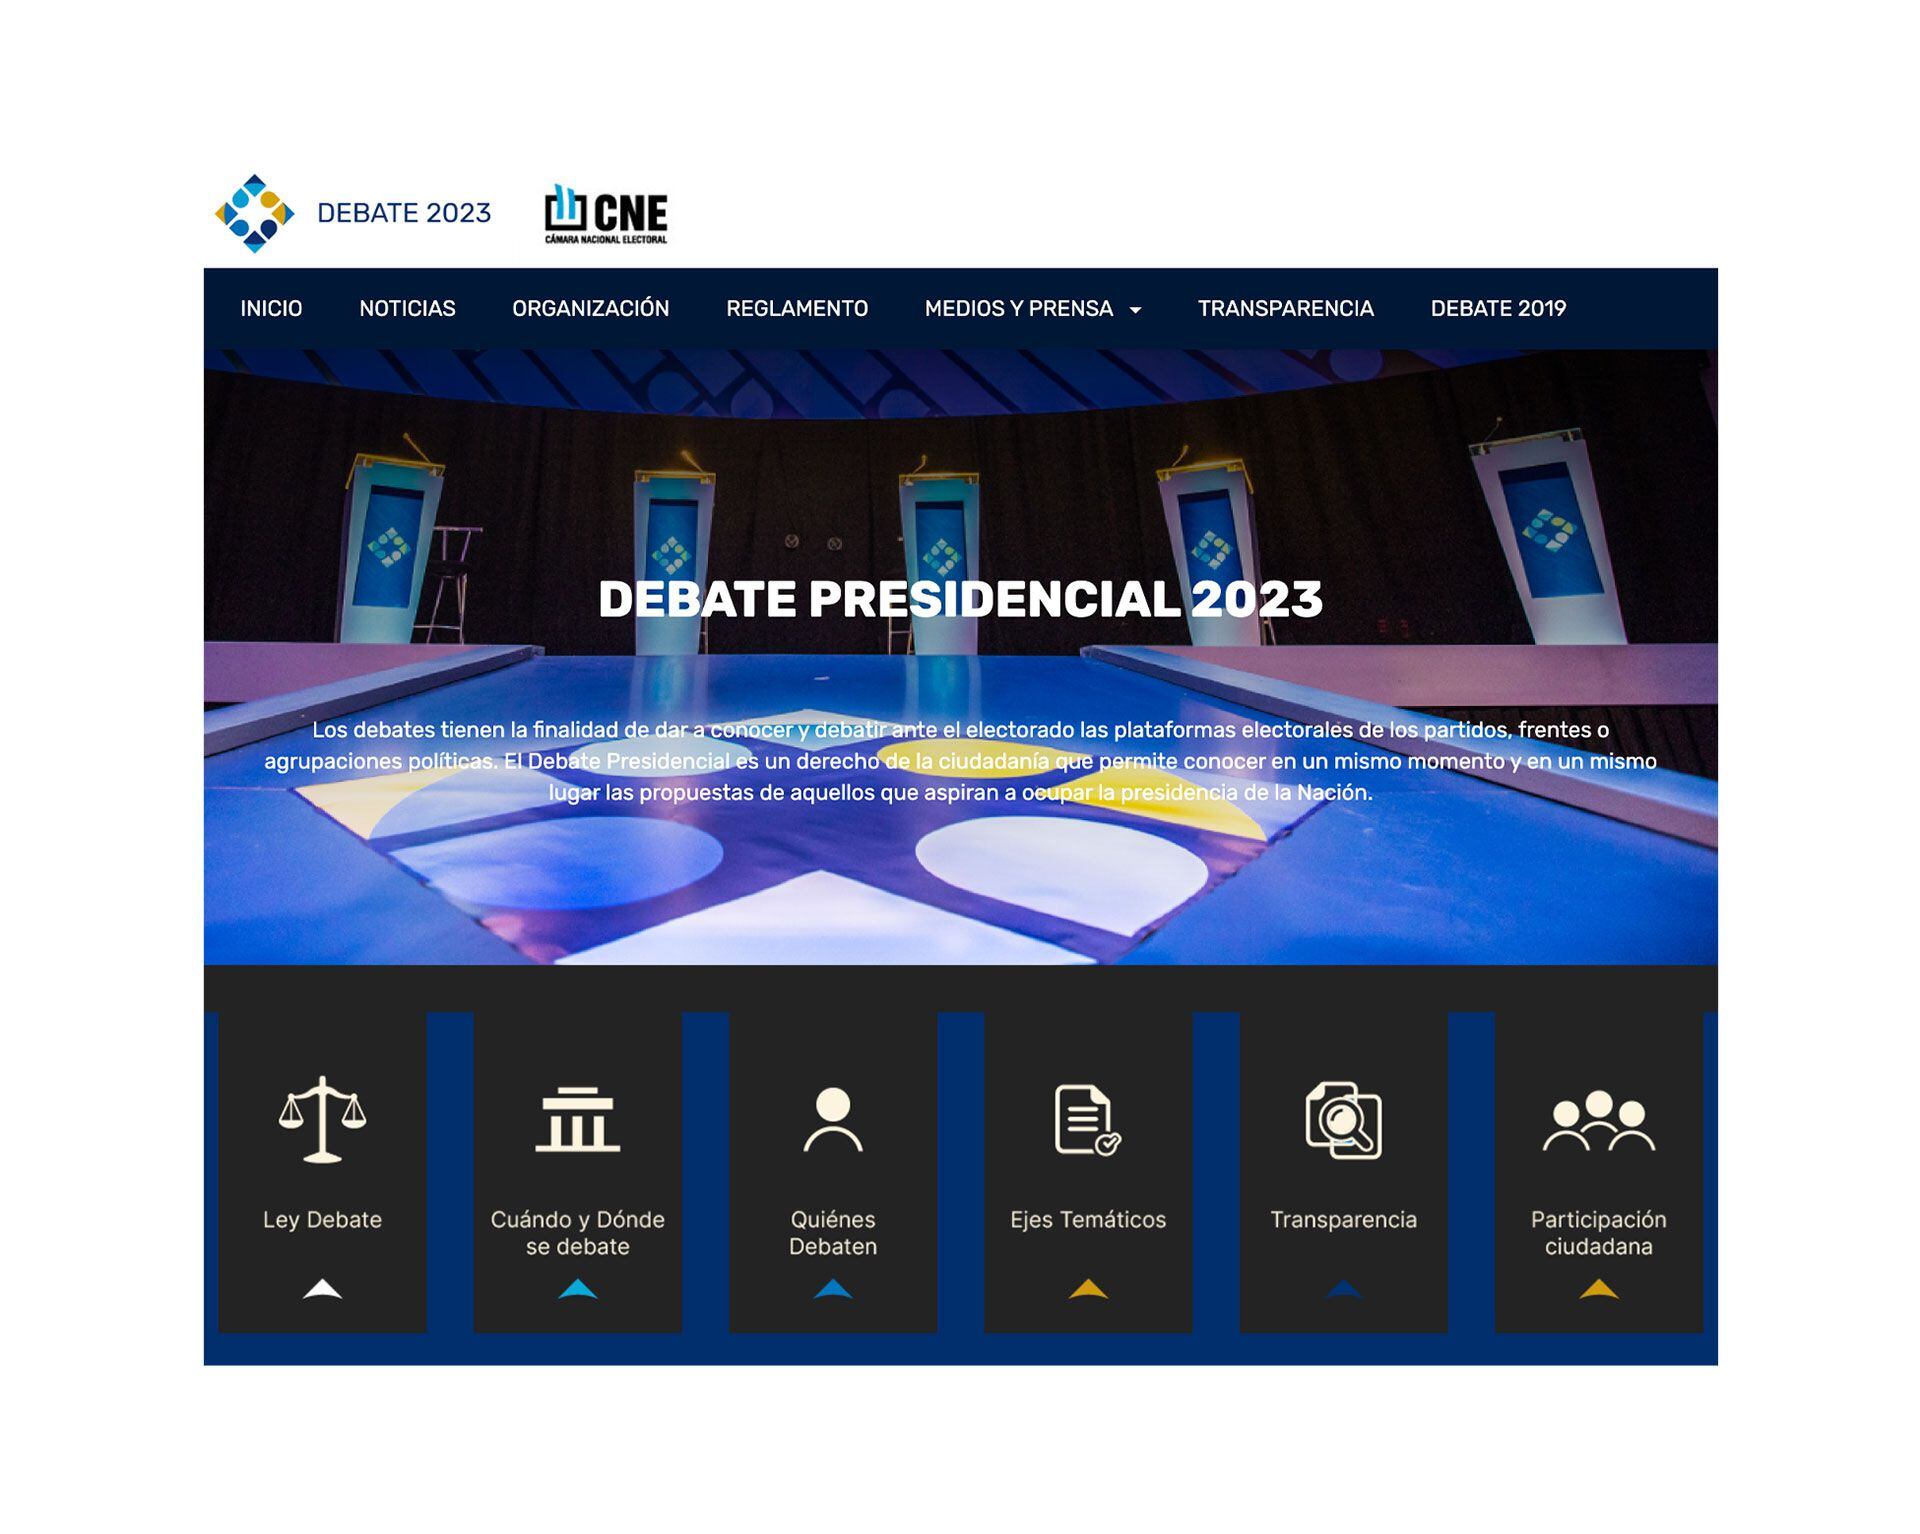 Los debates presidenciales obligatorios fueron establecidos por una ley que se votó en 2016, durante la gestión de Mauricio Macri